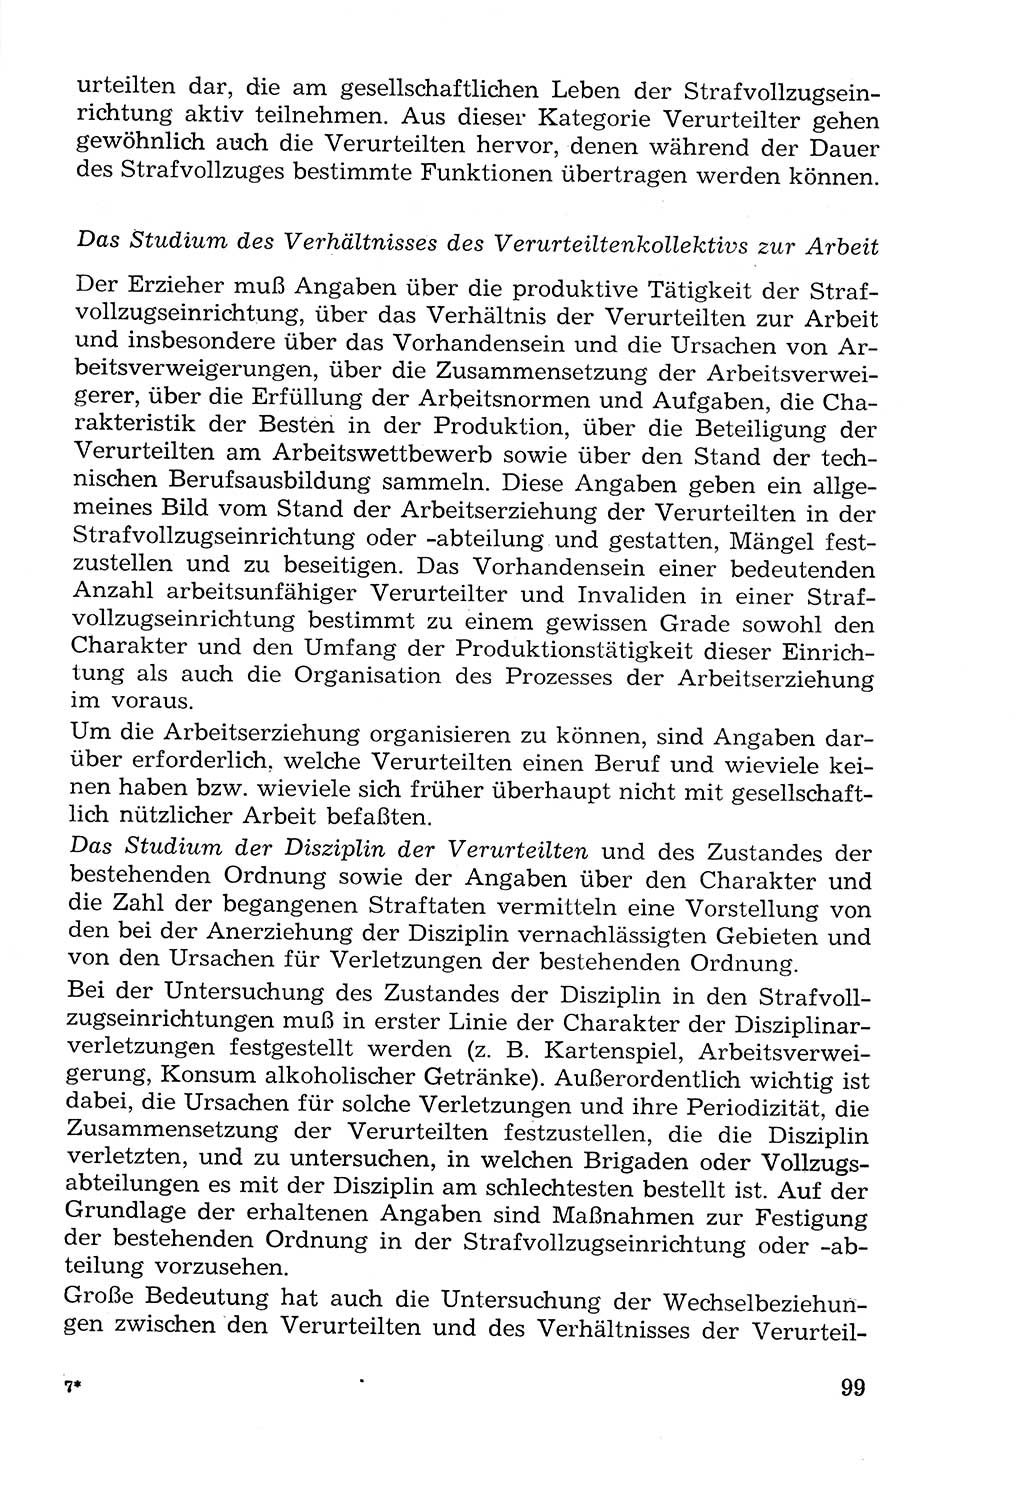 Lehrbuch der Strafvollzugspädagogik [Deutsche Demokratische Republik (DDR)] 1969, Seite 99 (Lb. SV-Pd. DDR 1969, S. 99)